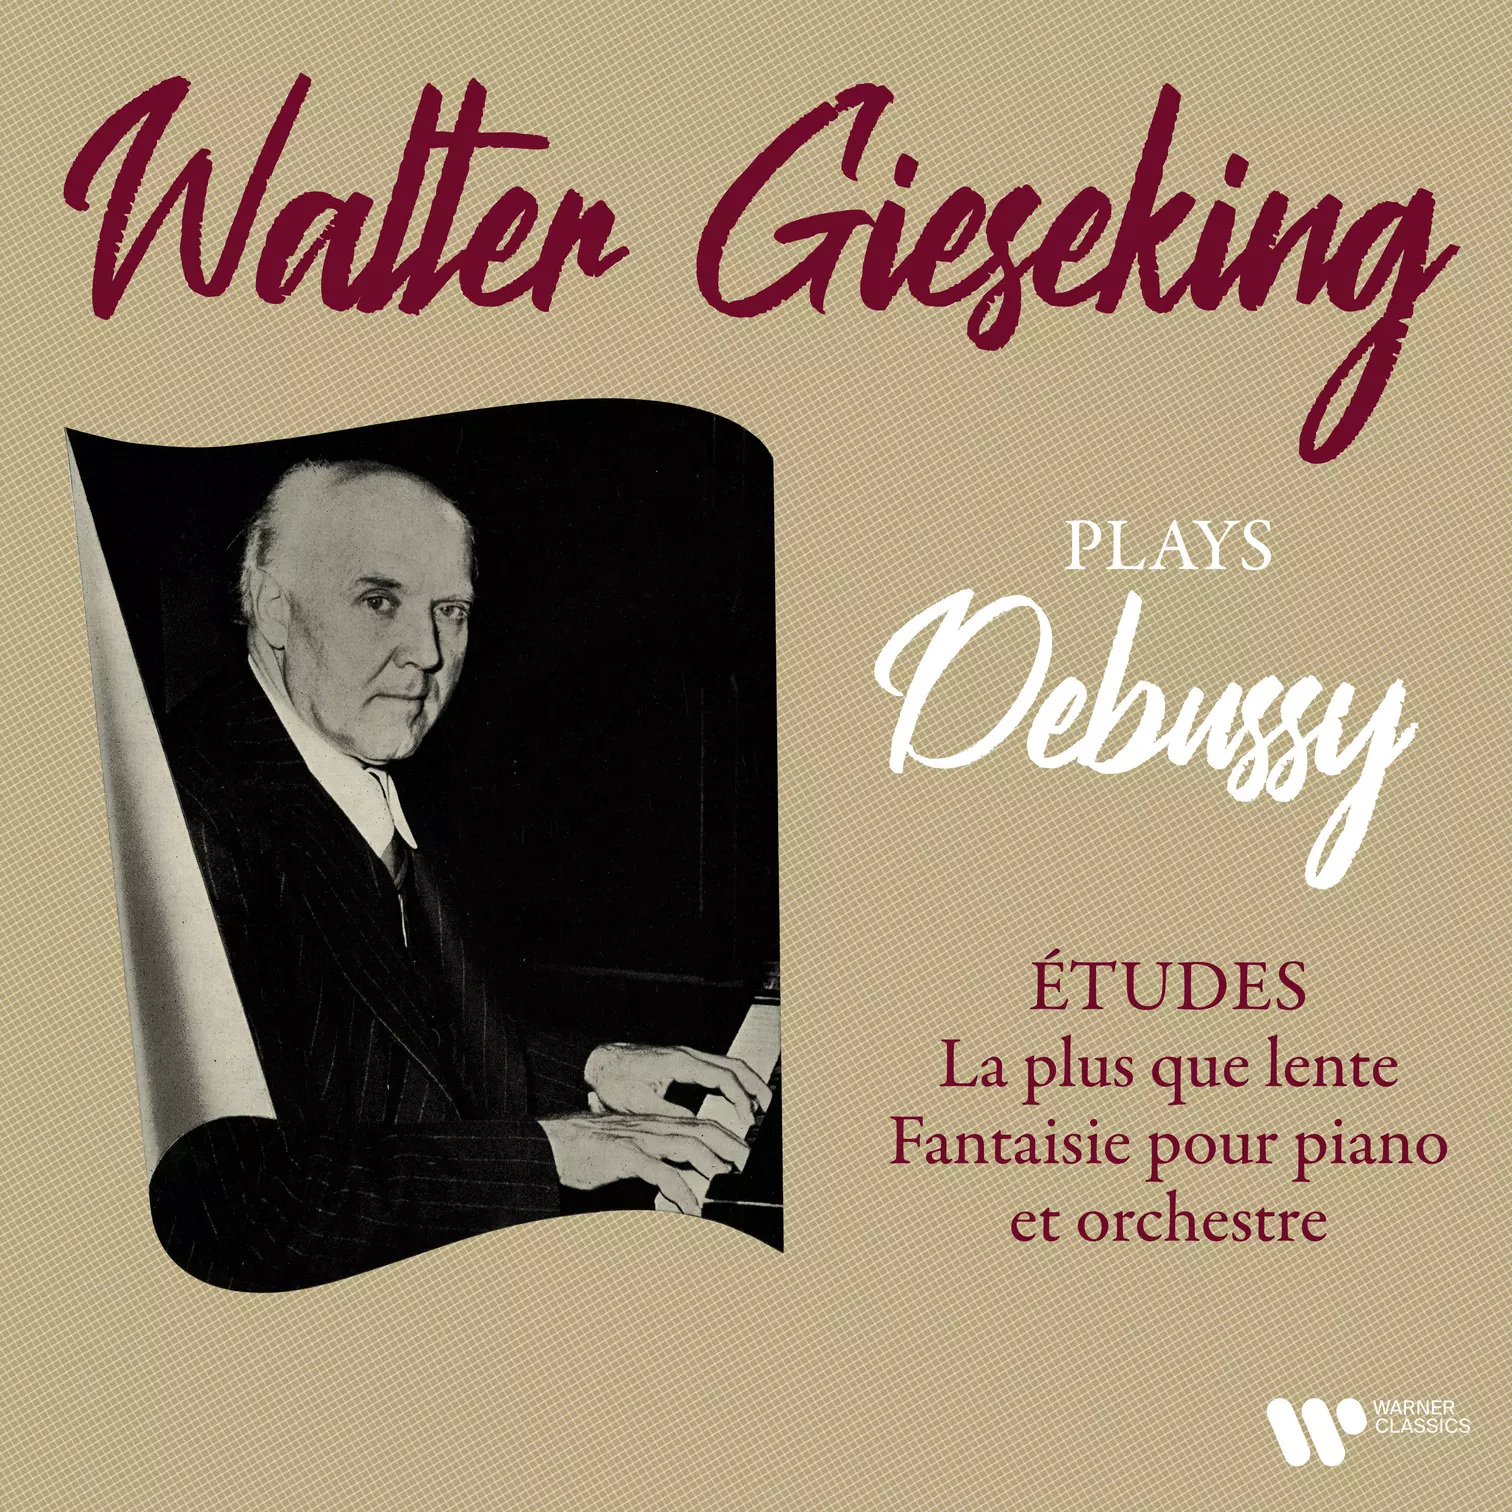 Debussy: Études, La plus que lente, Fantaisie pour piano et orchestre